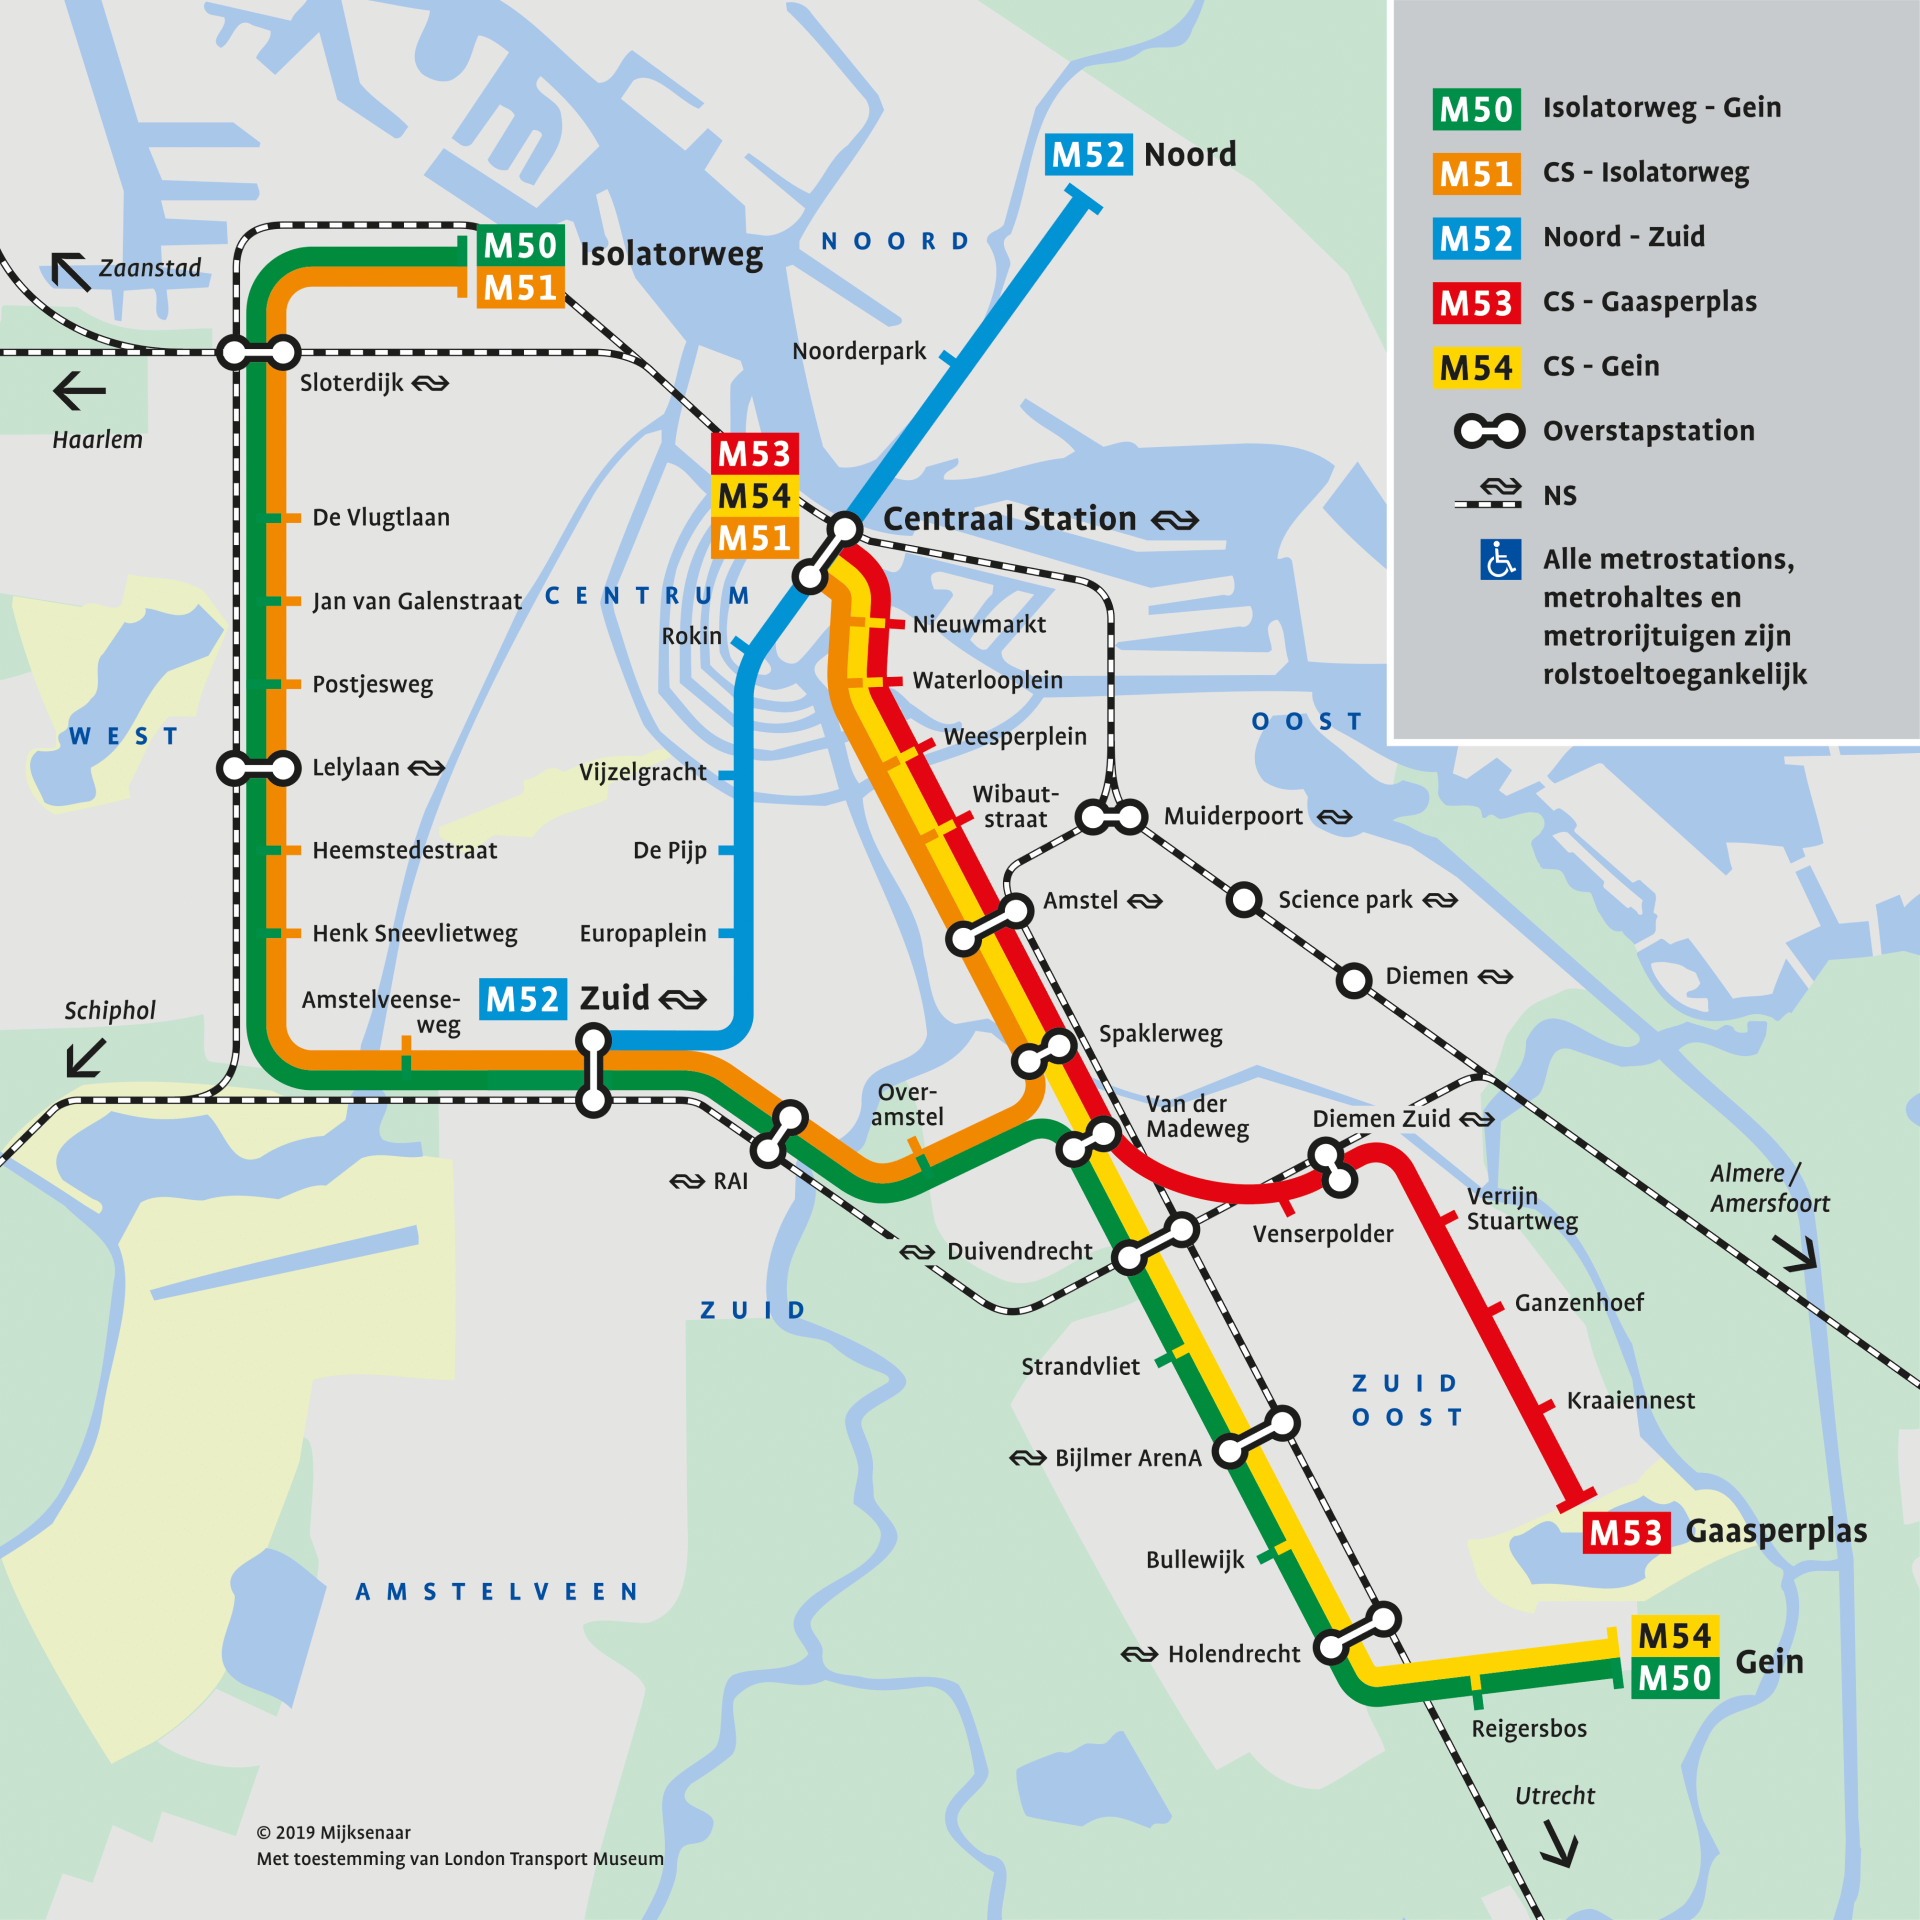 Plan du métro d'Amsterdam lignes et arrêts